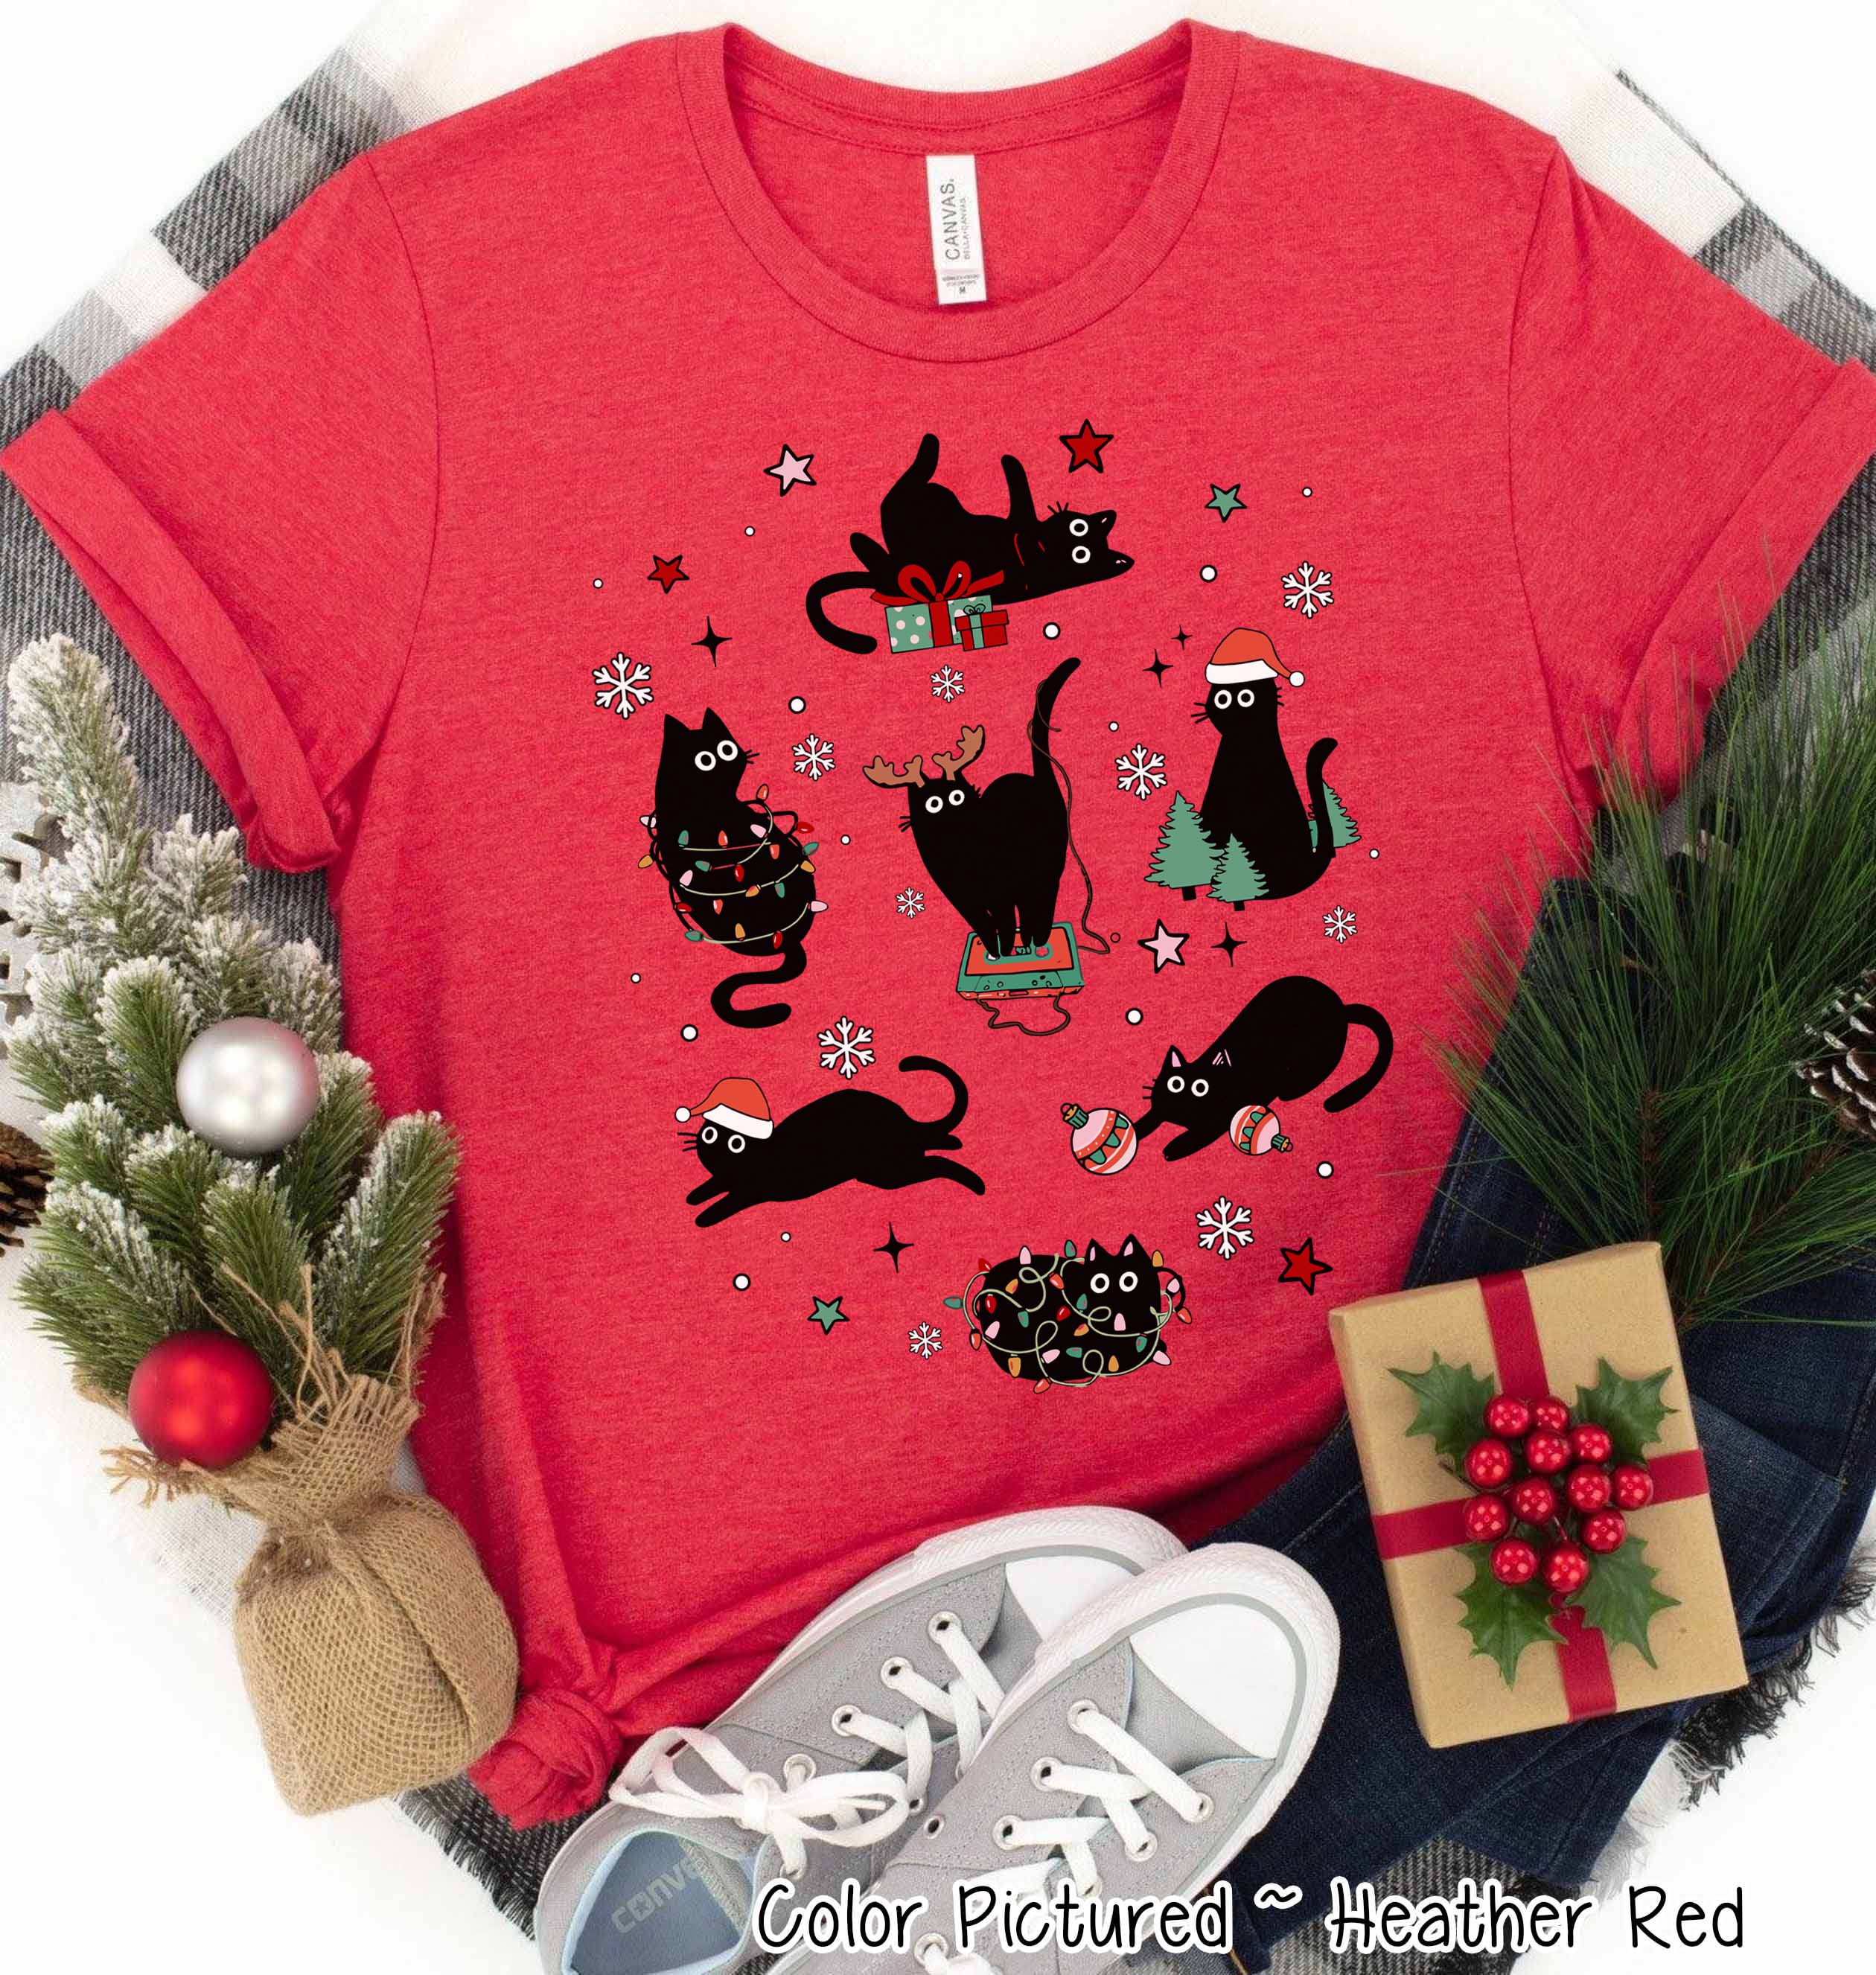 Mischievous Black Cat Christmas Tee or Sweatshirt